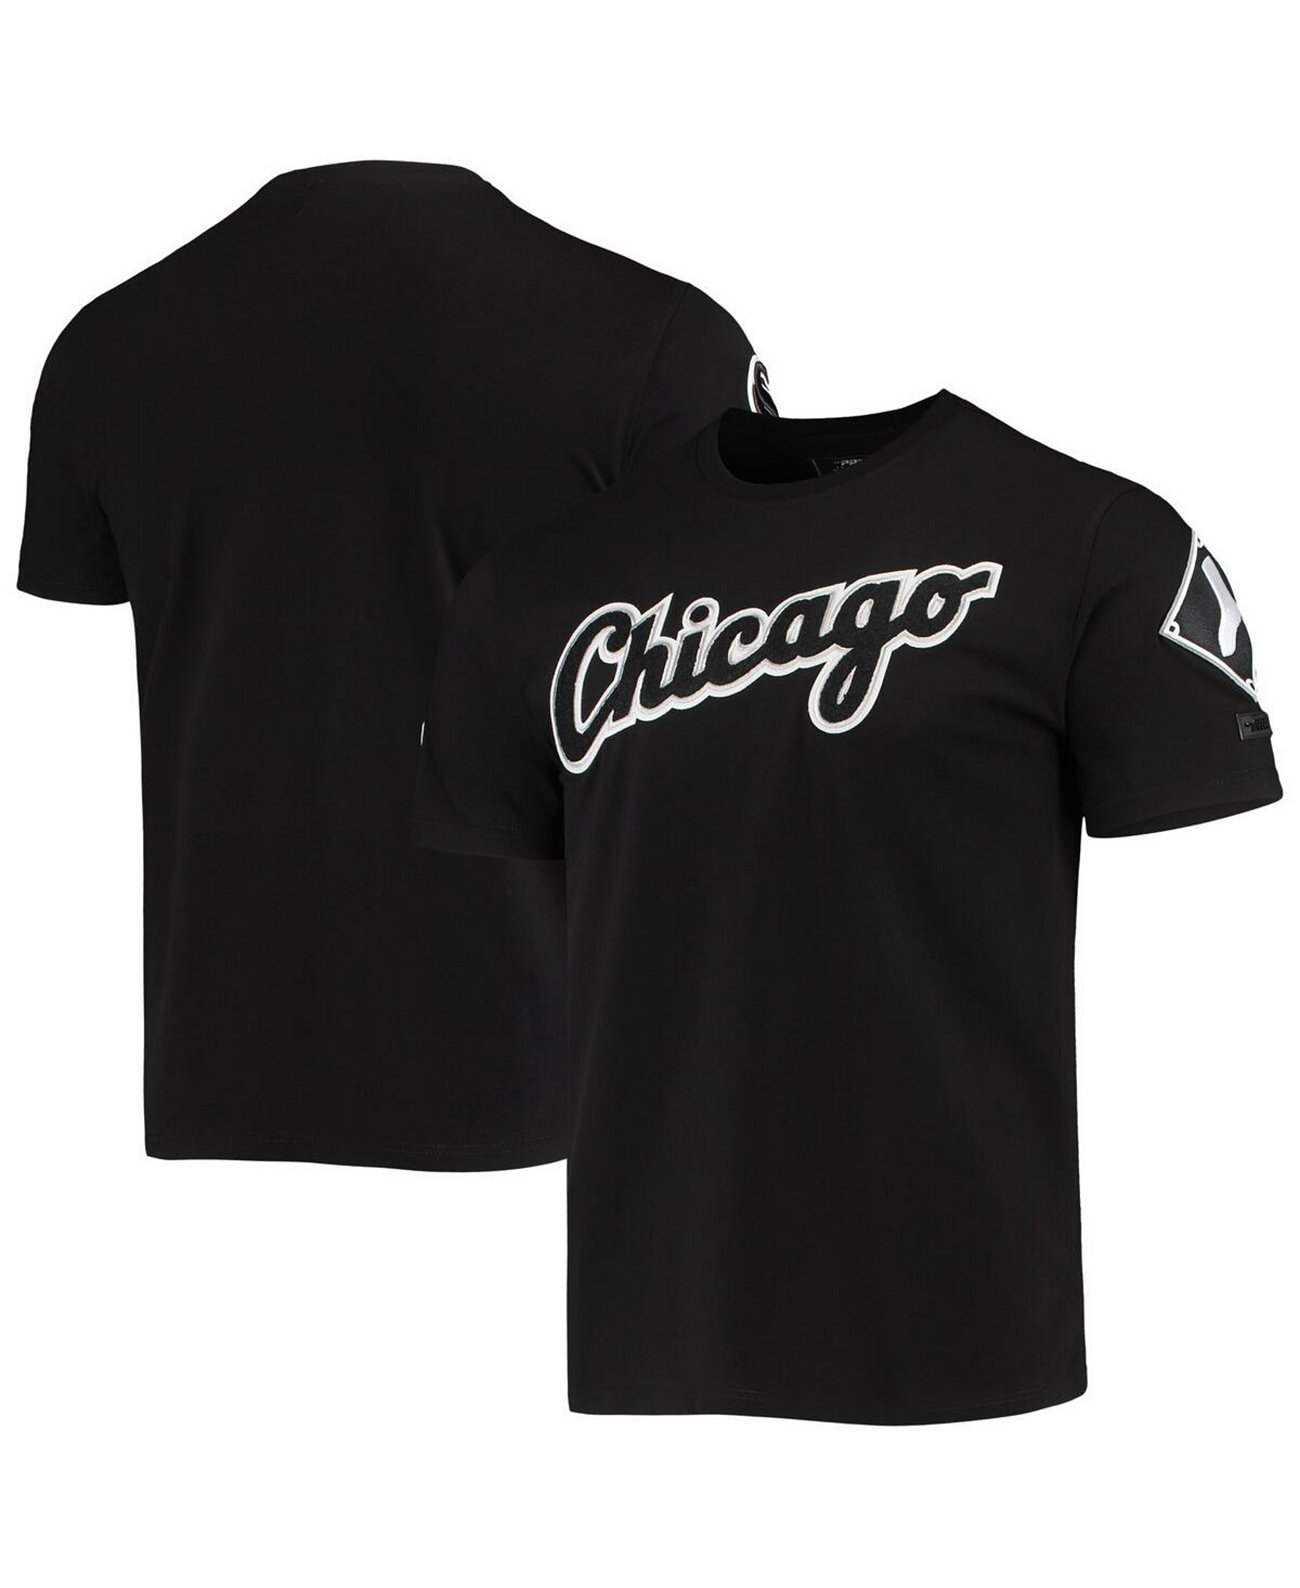 Мужская черная футболка с логотипом команды Chicago White Sox Team Pro Standard